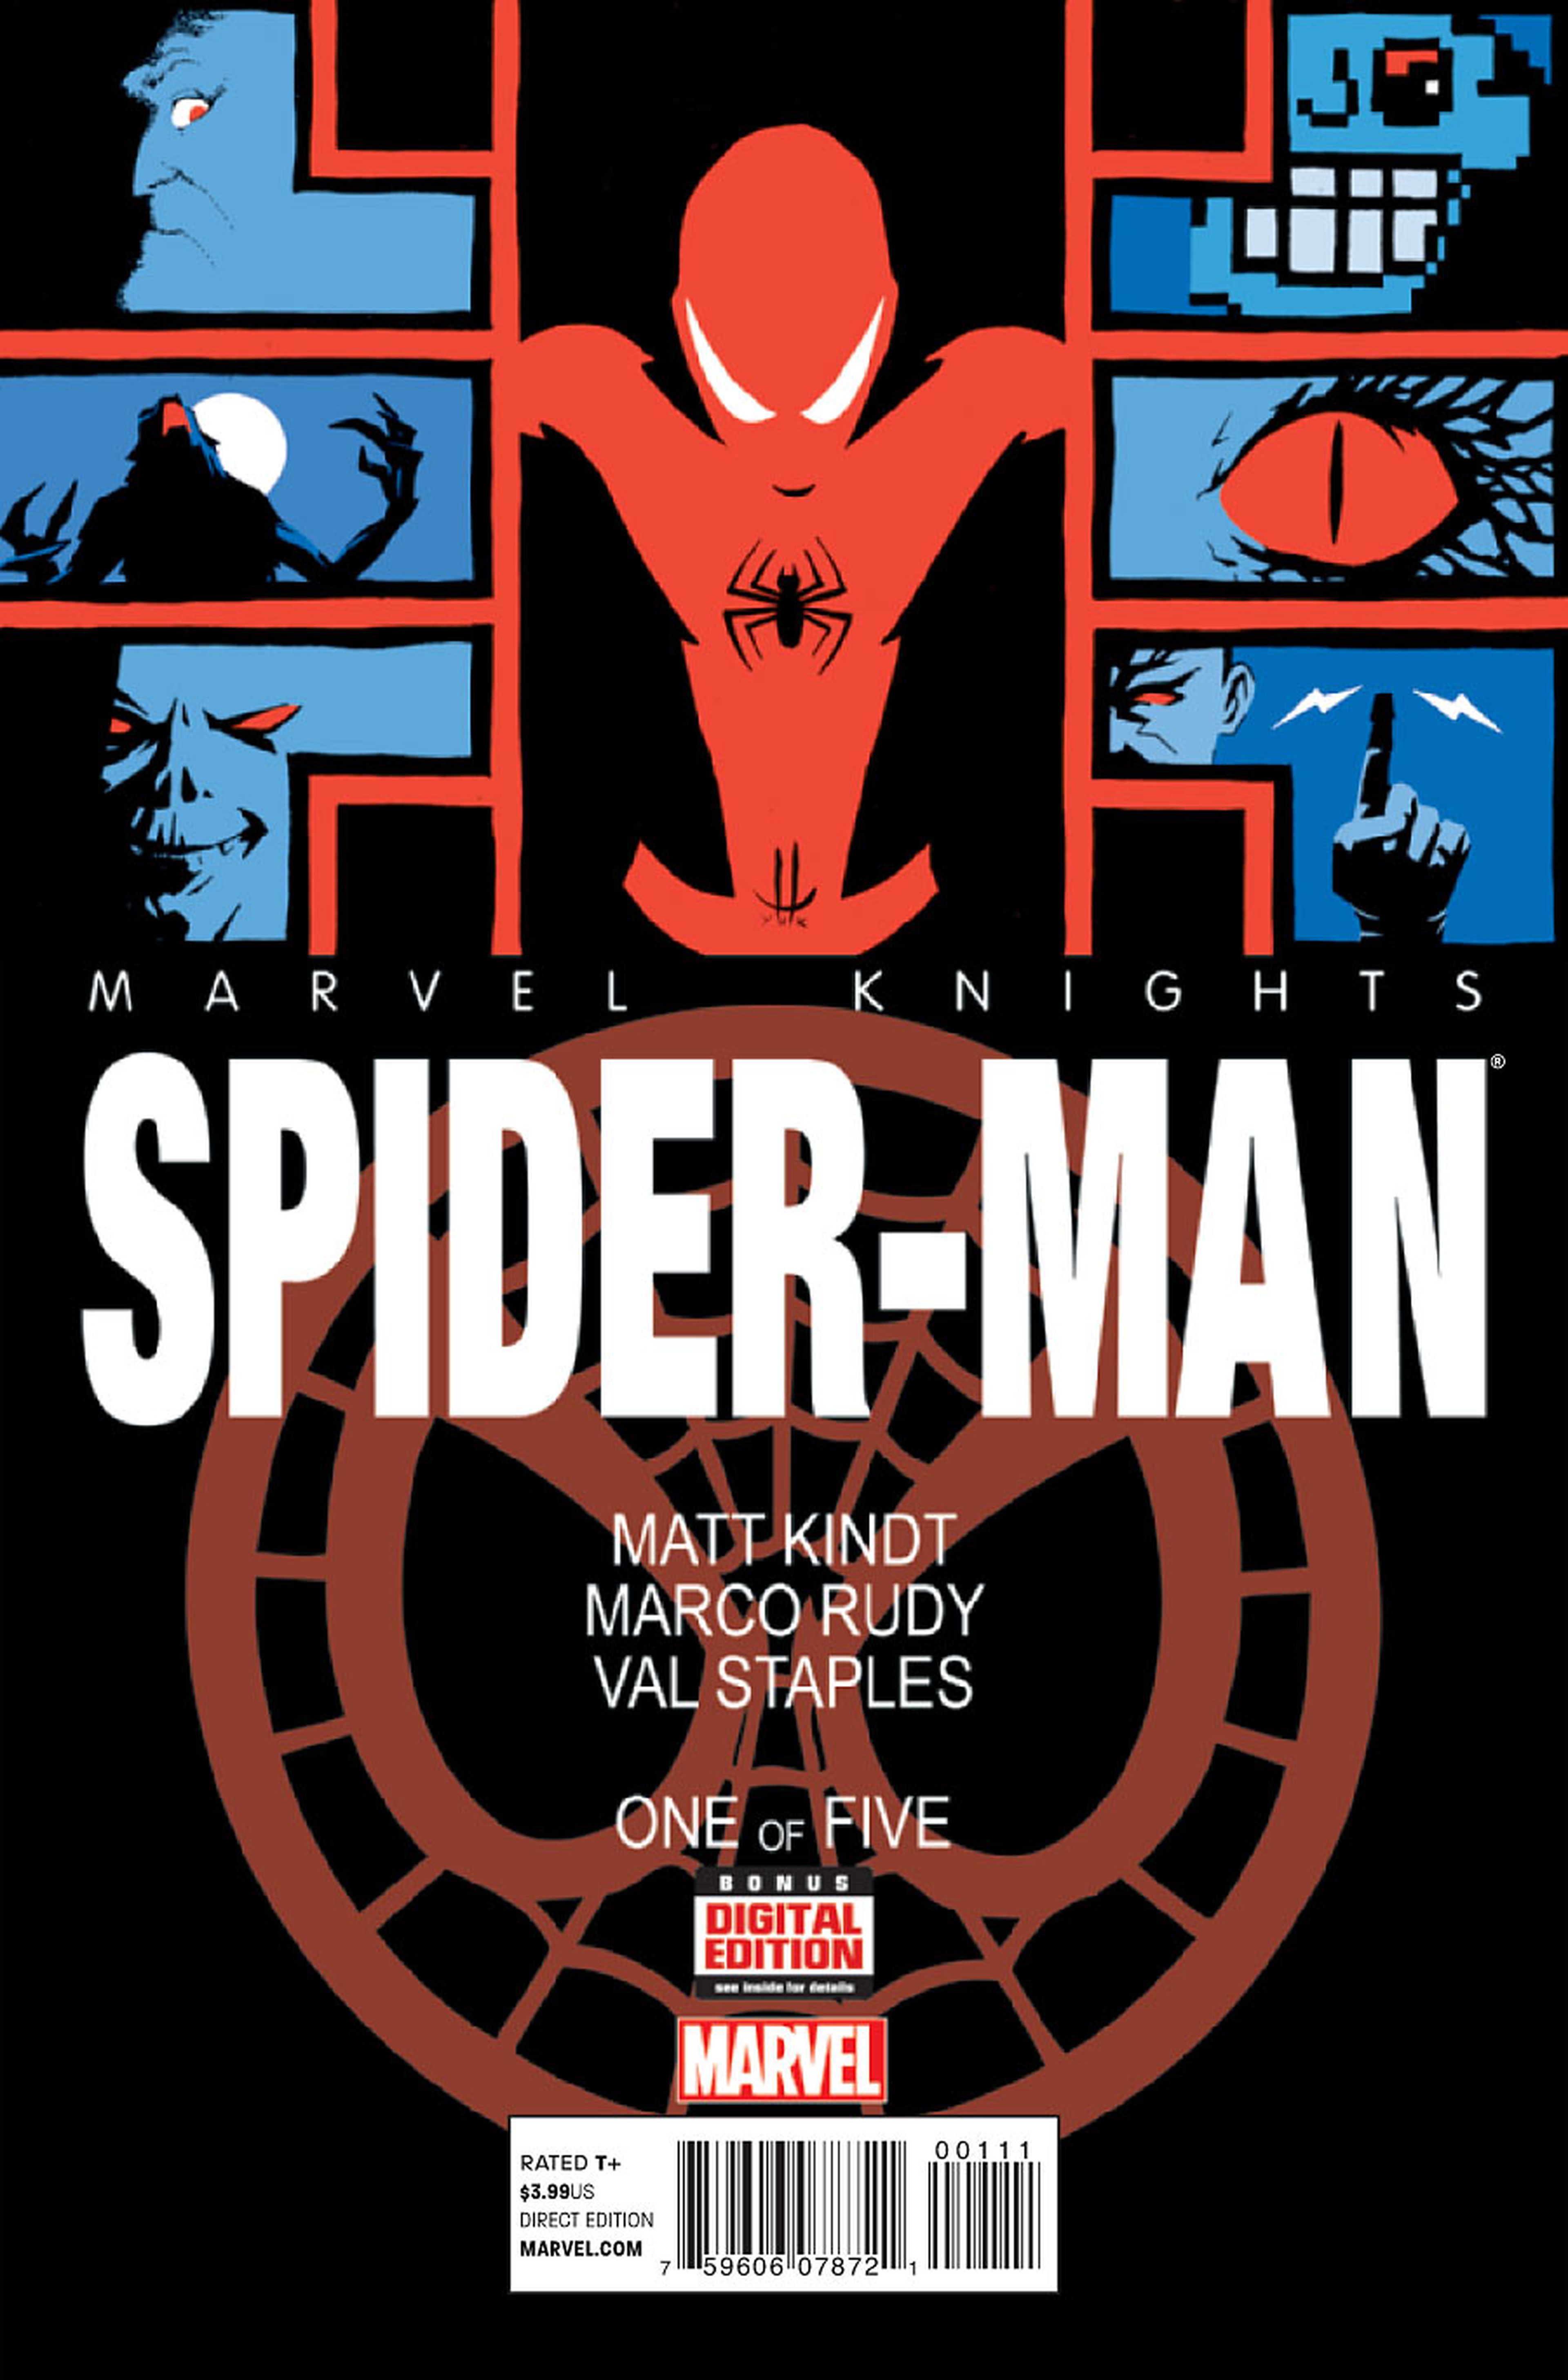 Avance EEUU: El regreso de Marvel Knights: Spider-man